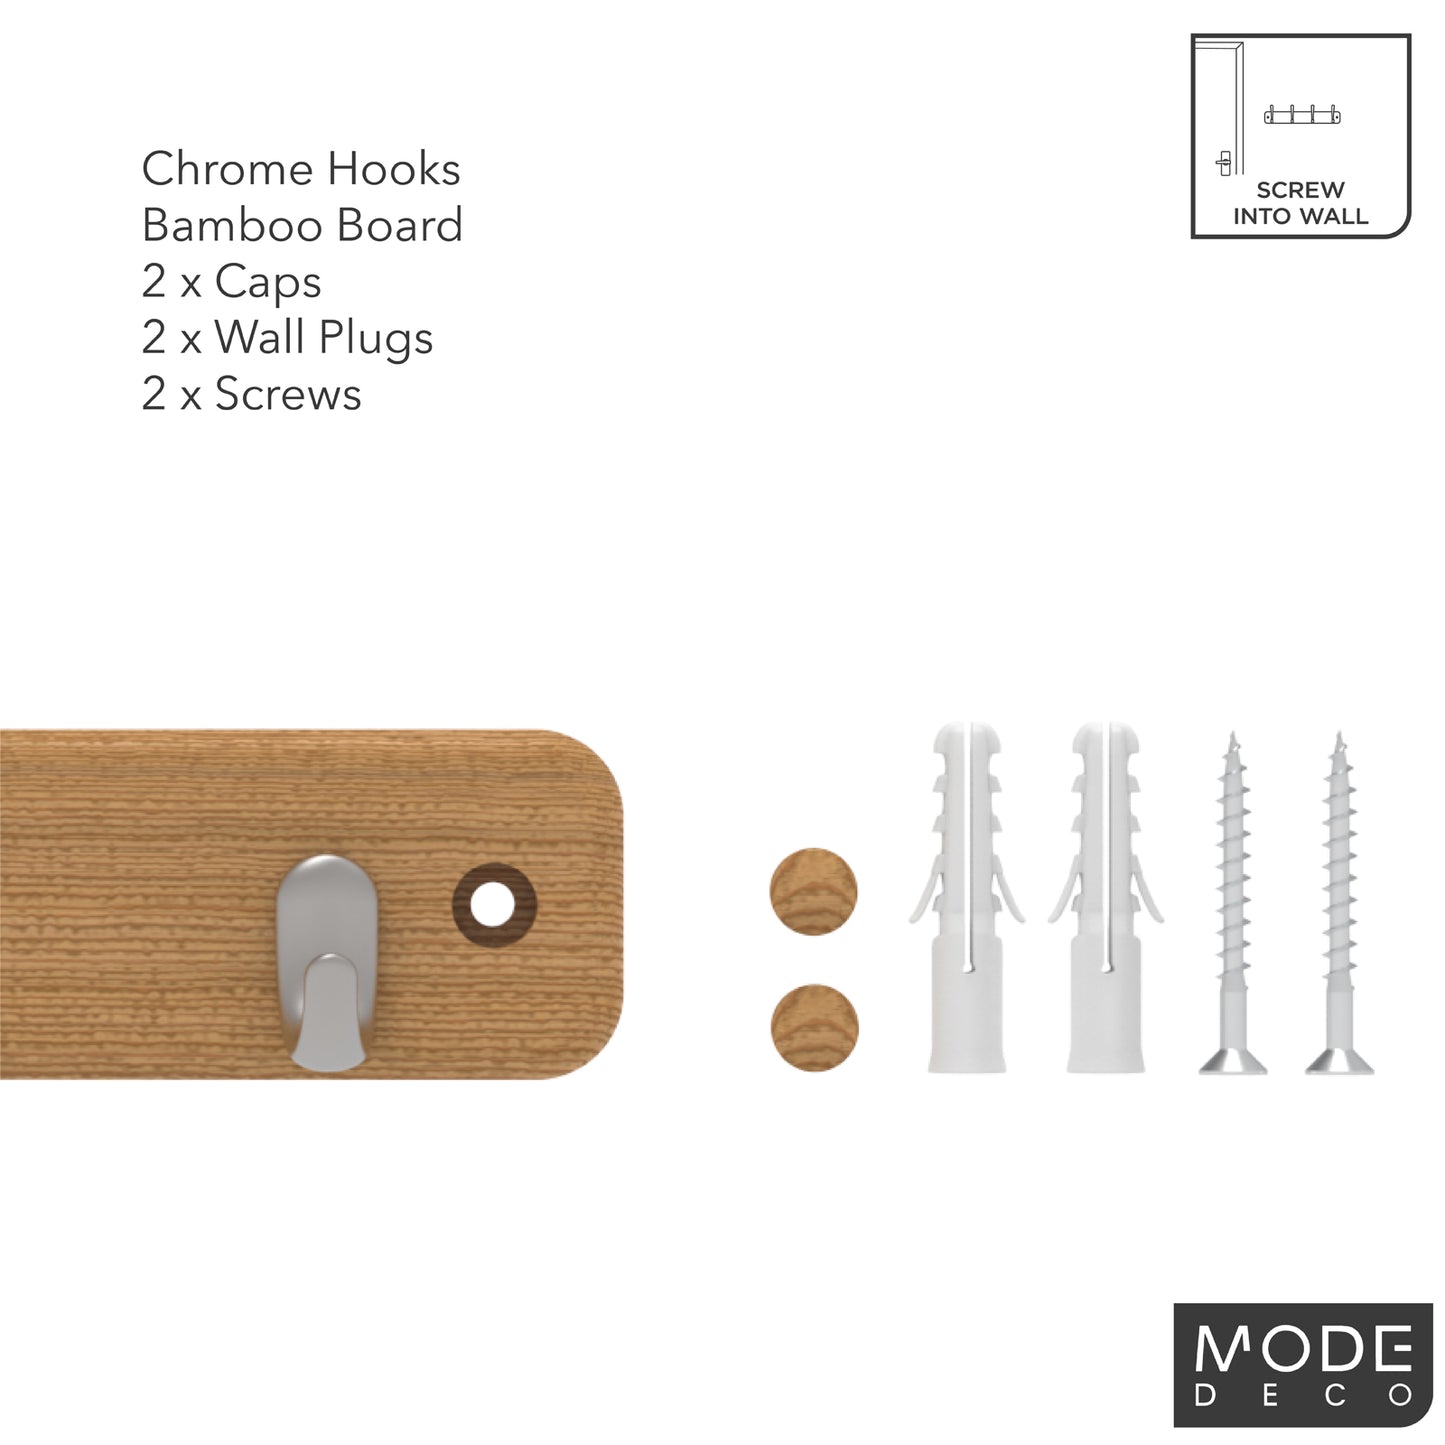 7 Chrome Hooks on Bamboo Board Key Rack